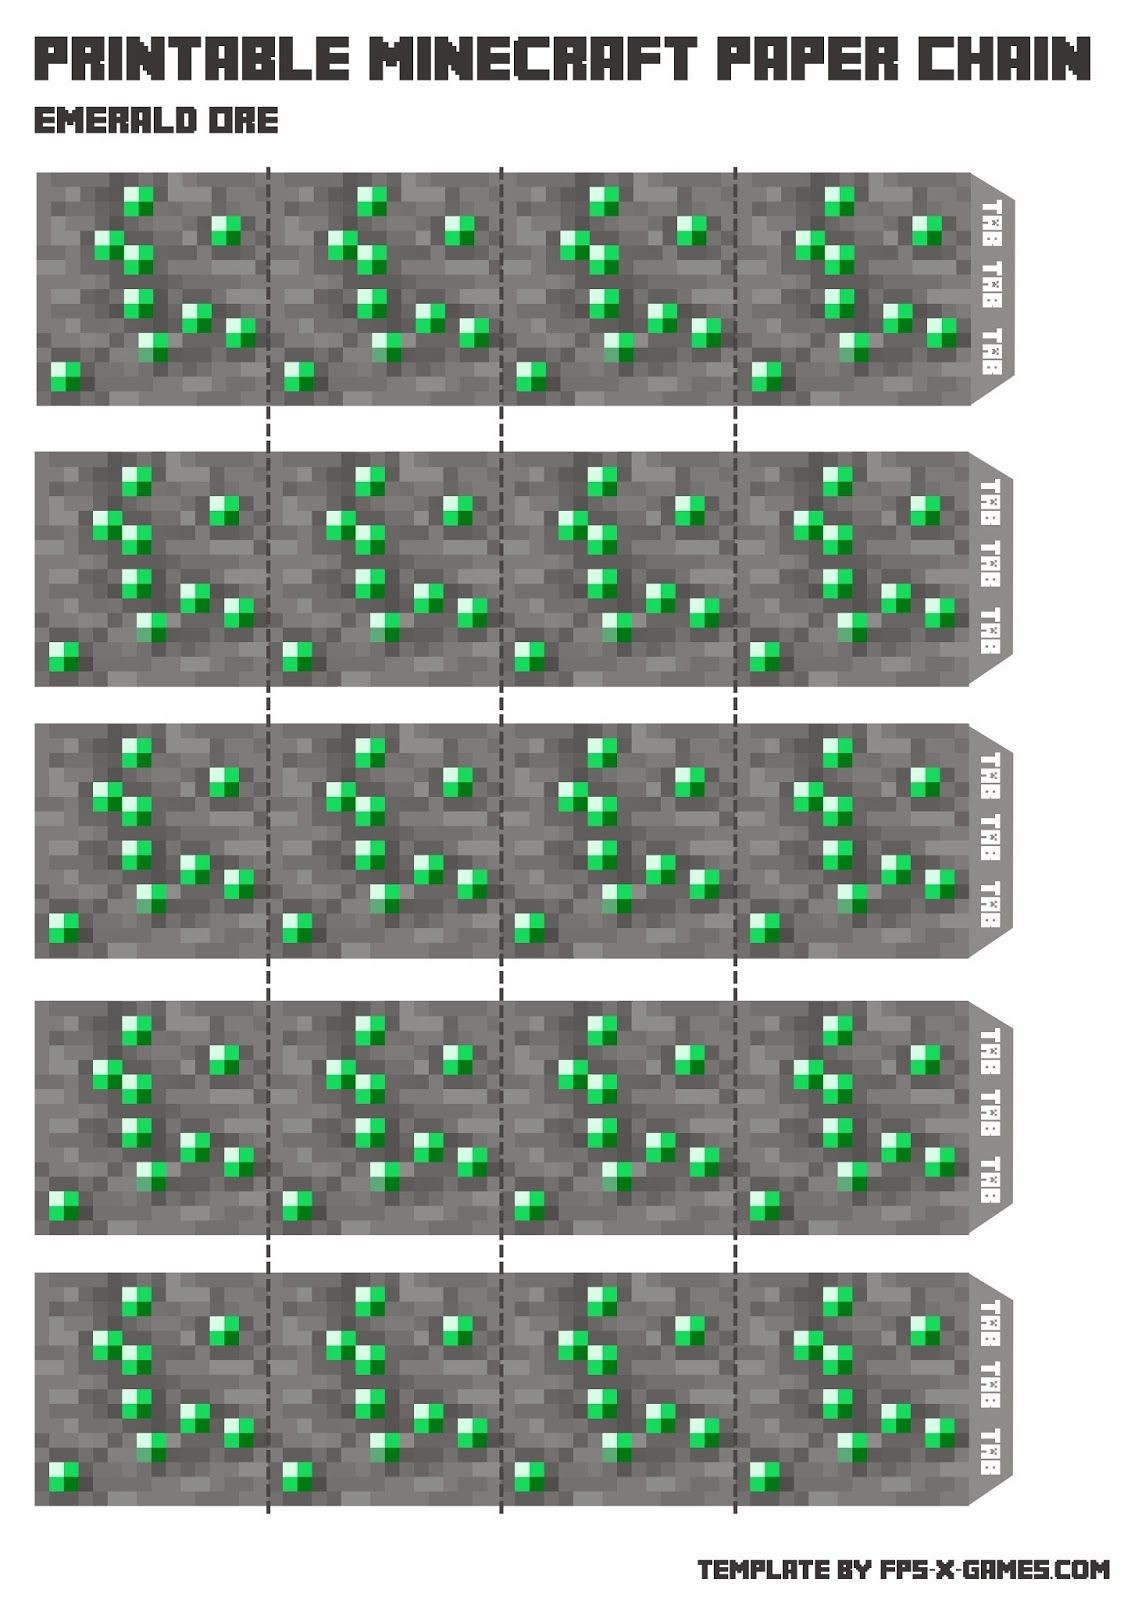 Minecraft Block Papercraft Minecraft Papercraft Chain Emerald ore